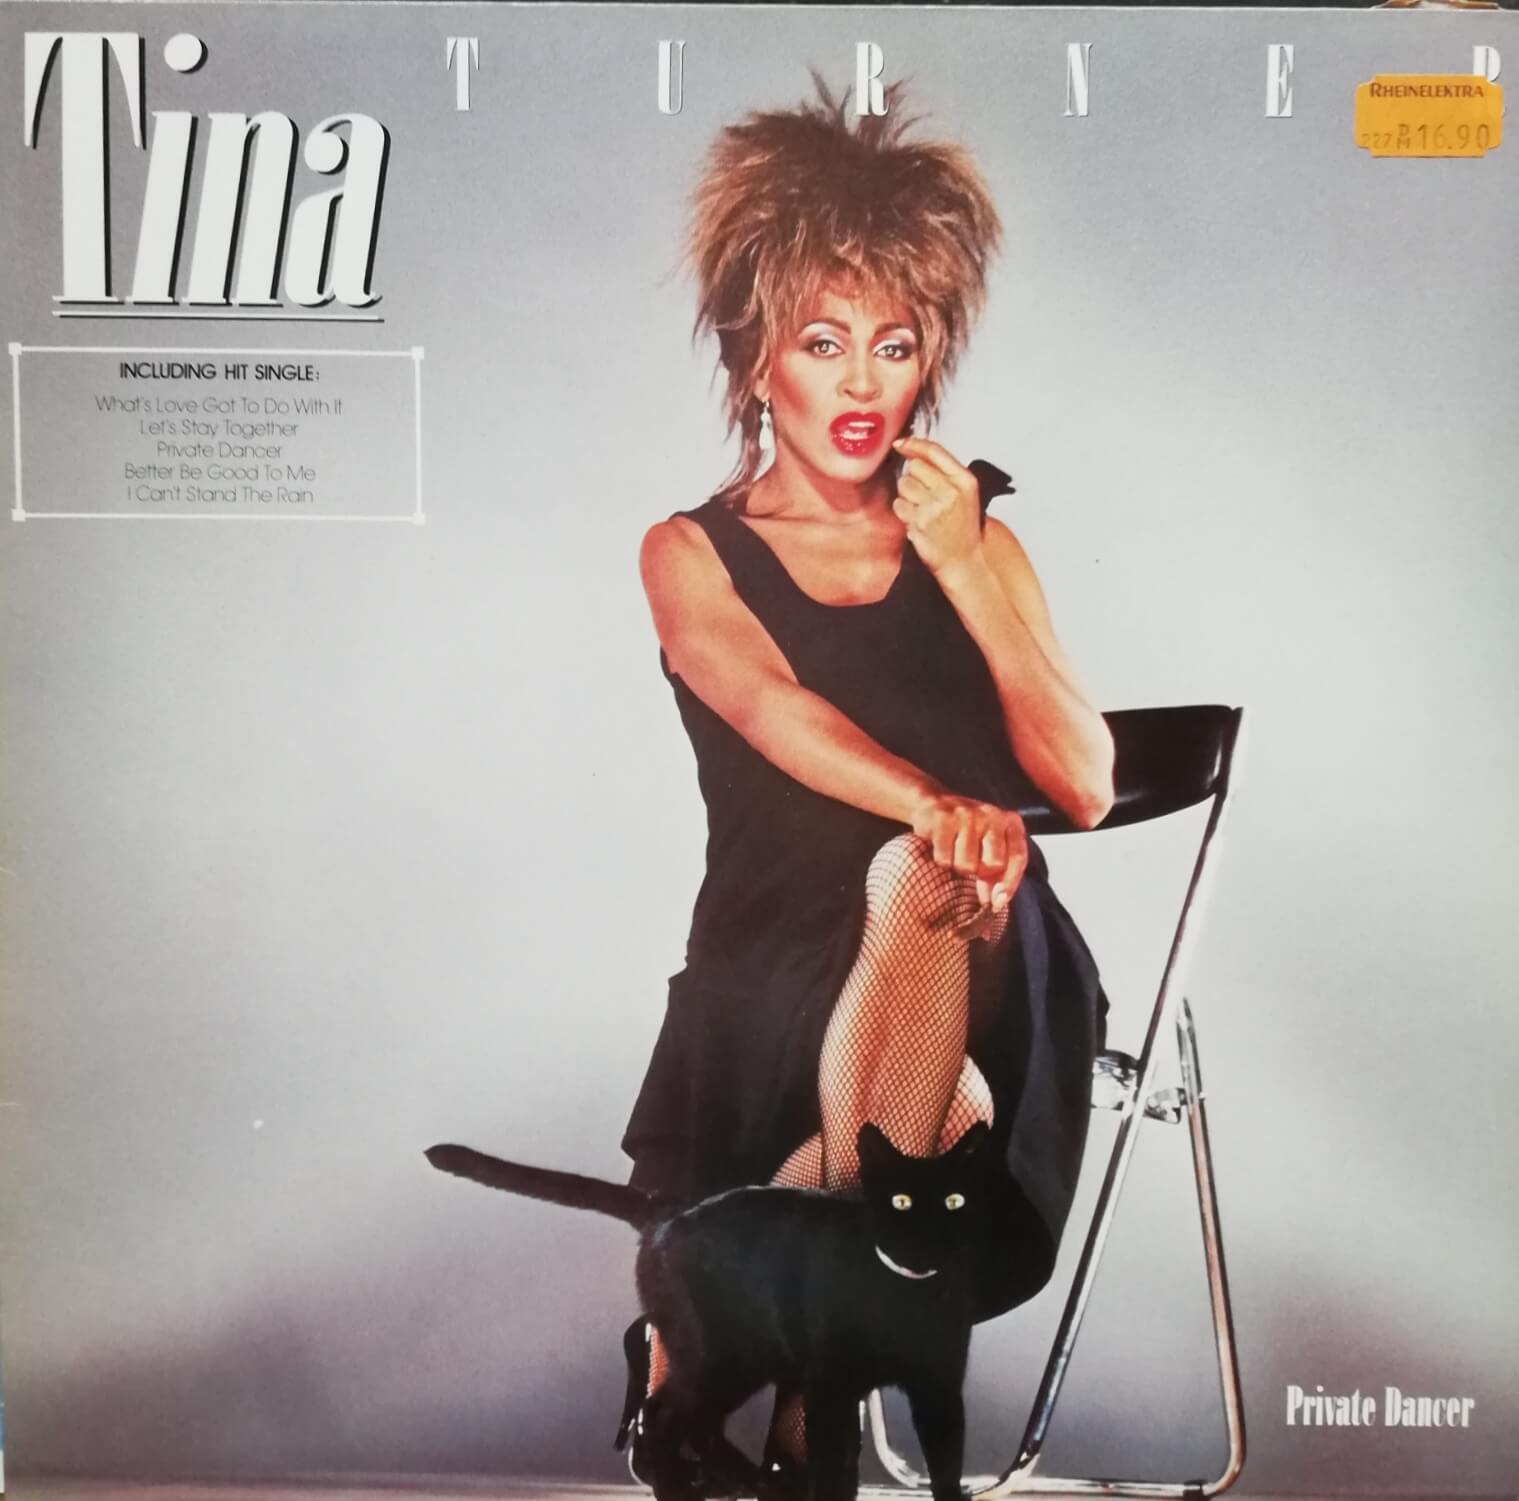 Okładka płyty winylowej artysty artysty Tina Turner o tytule Private Dancer